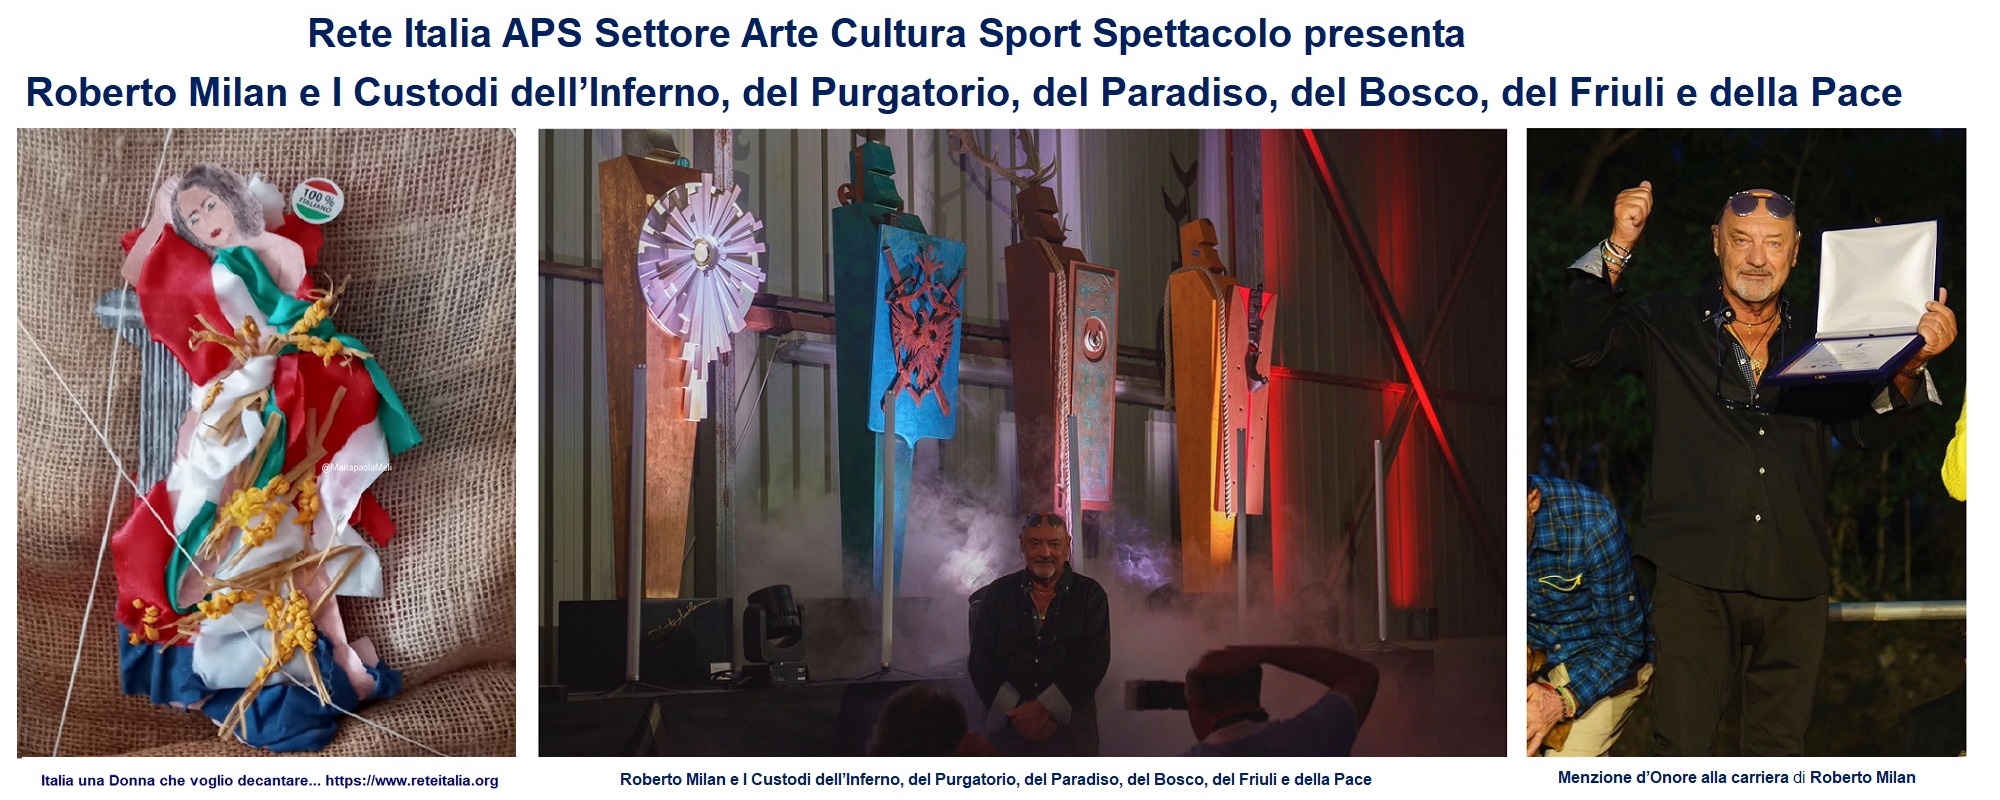 Rete Italia APS Settore Arte Cultura Sport Spettacolo presenta I Custodi opere del maestro Roberto Milan